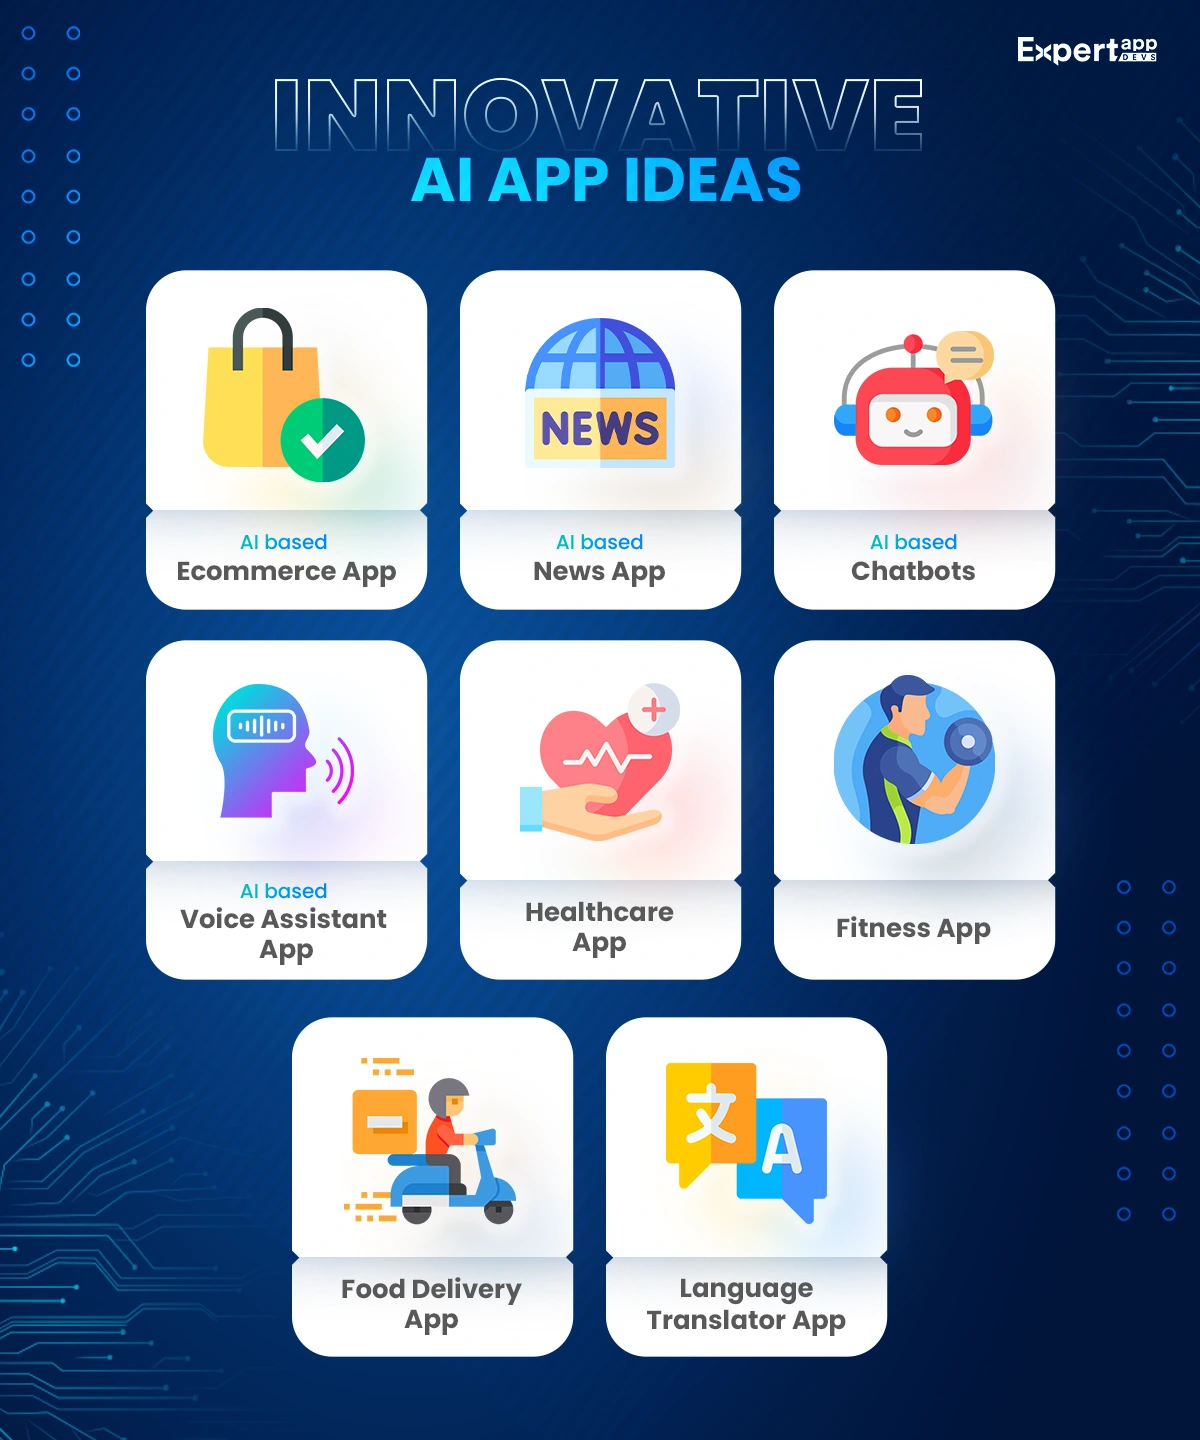 Innovative AI App Ideas